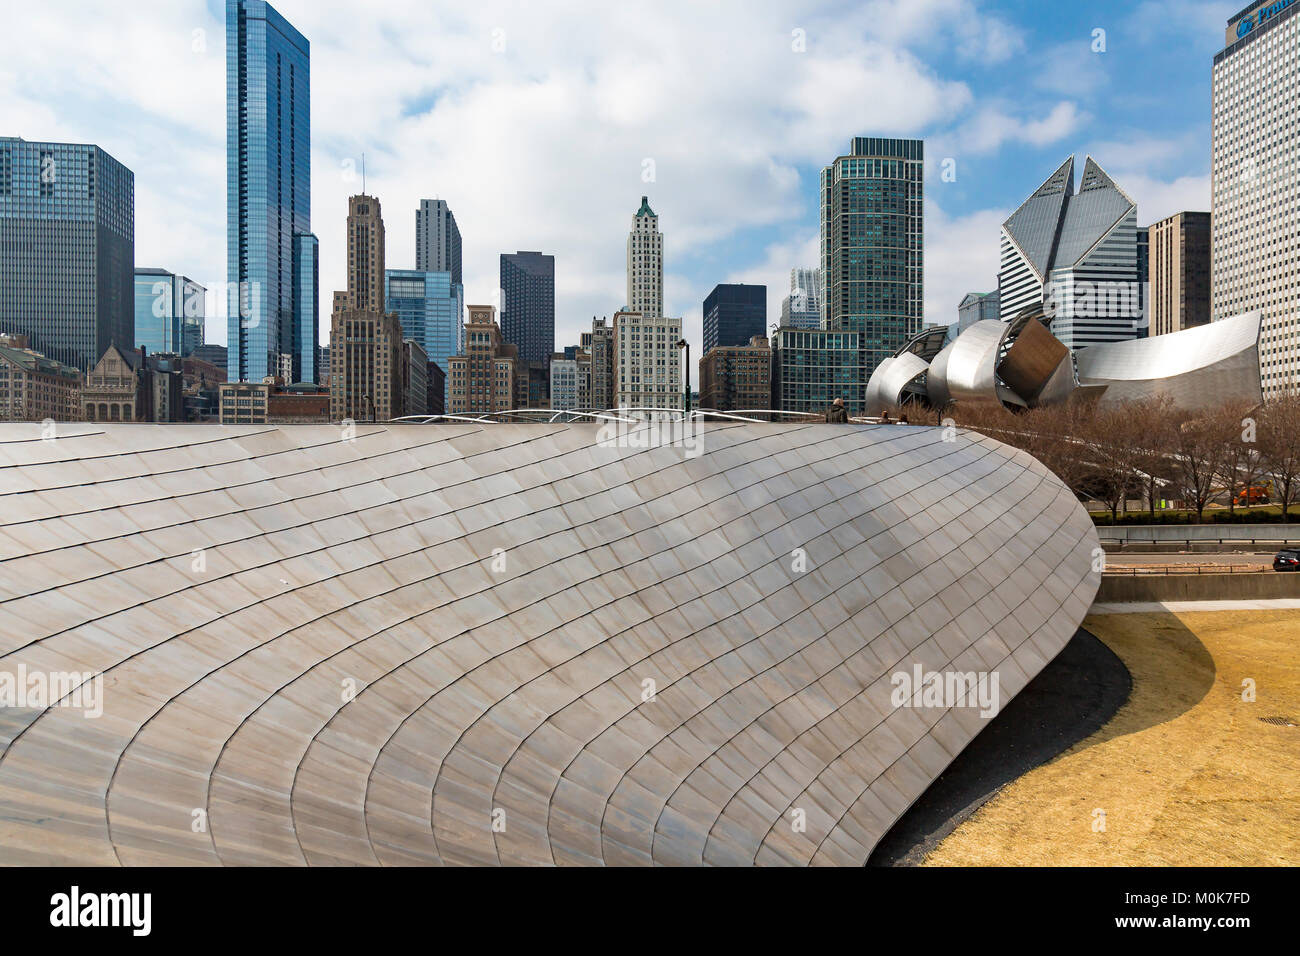 Puente Millenium Park en Chicago por el arquitecto Frank Gehry. Este es un precioso paseo puente que ofrece impresionantes vistas del centro de la ciudad de Chicago. Foto de stock